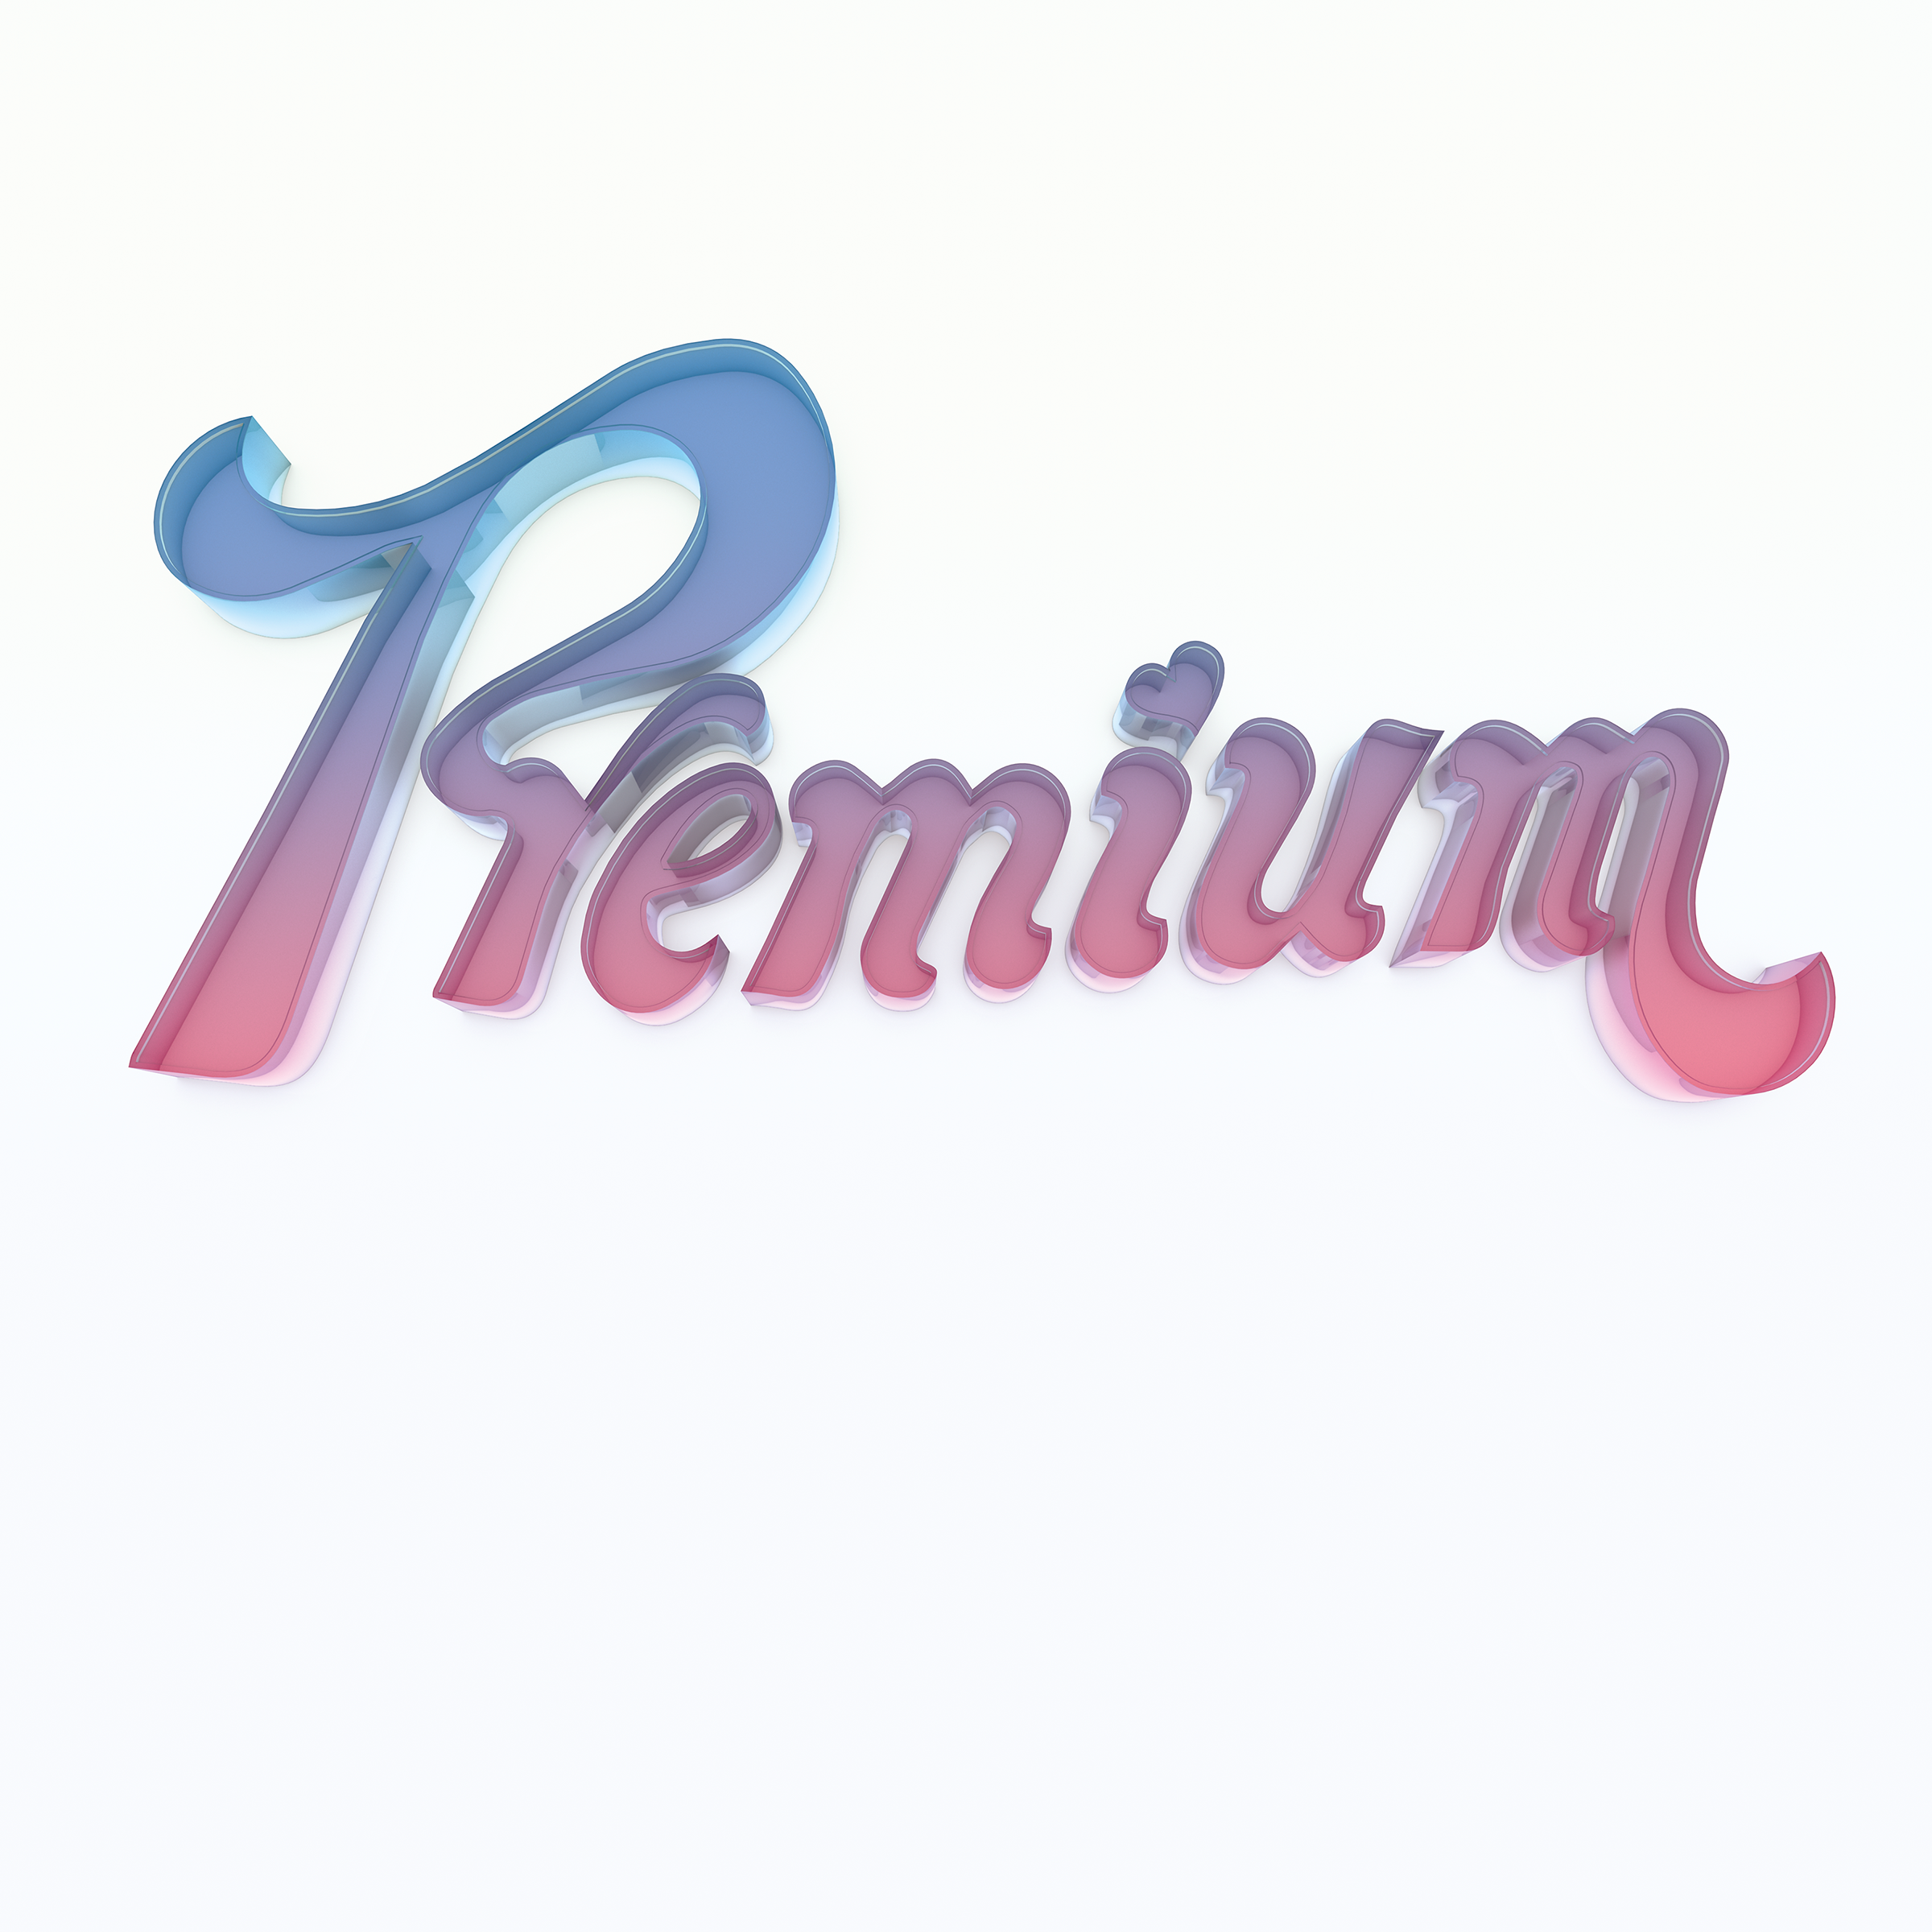 Sam Evian "Premium" LP Cover Art